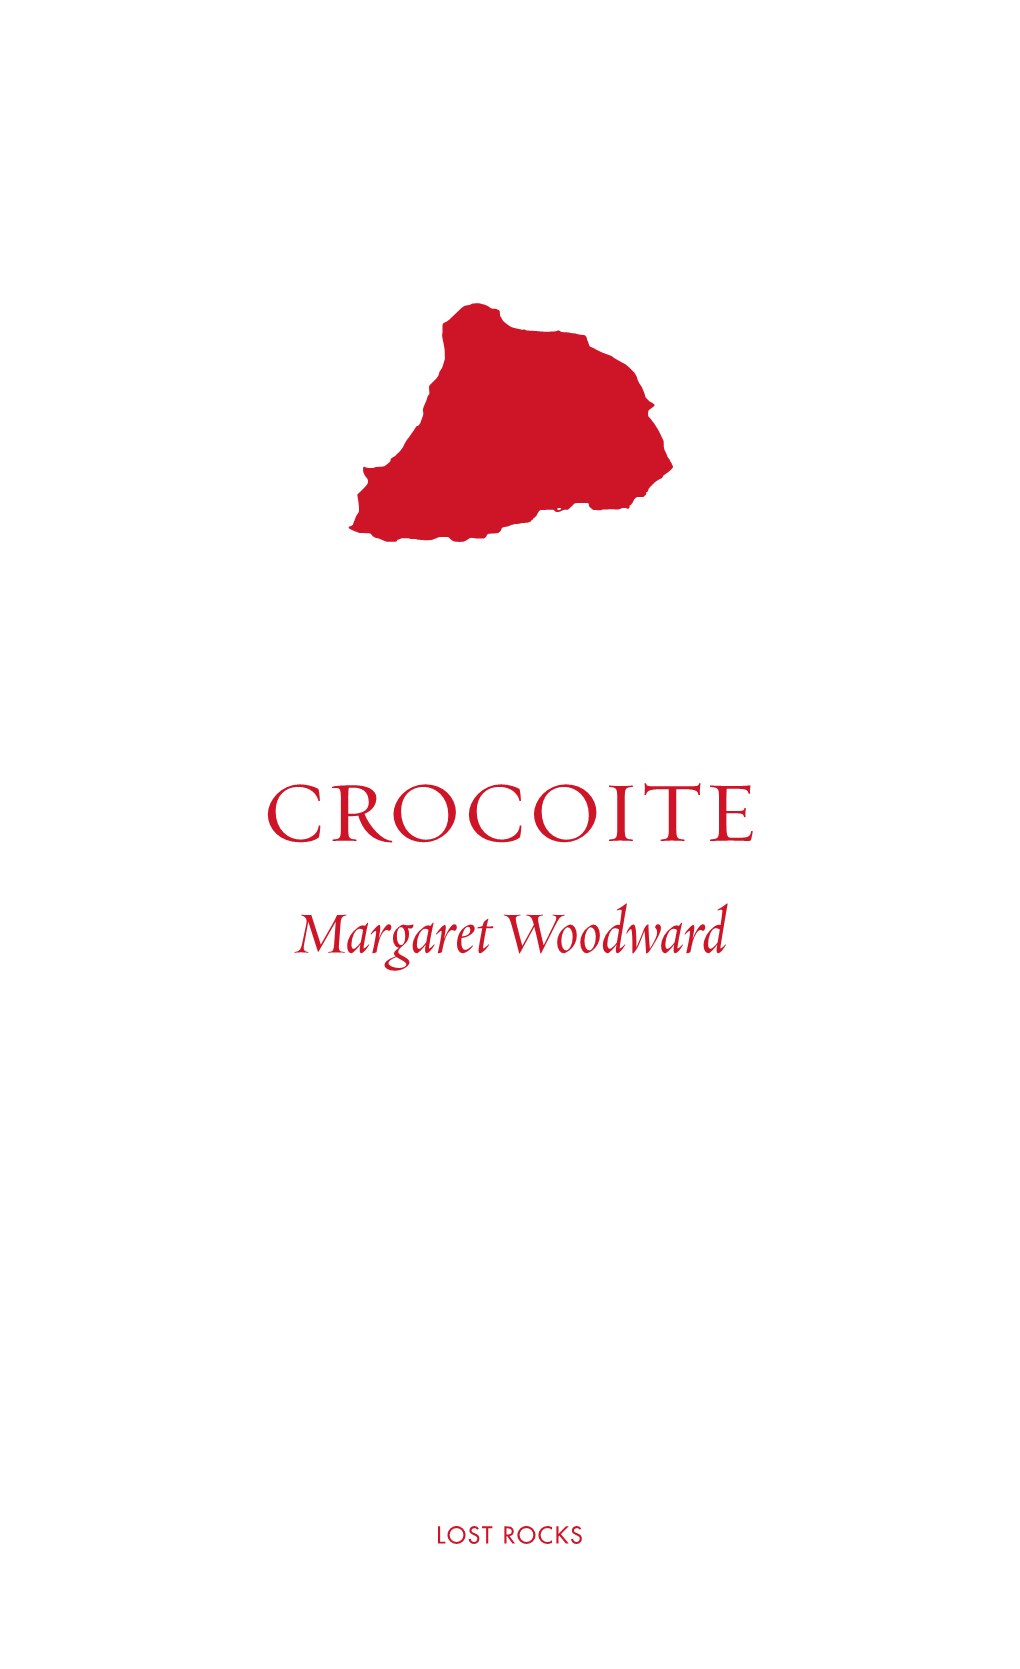 CROCOITE Margaret Woodward